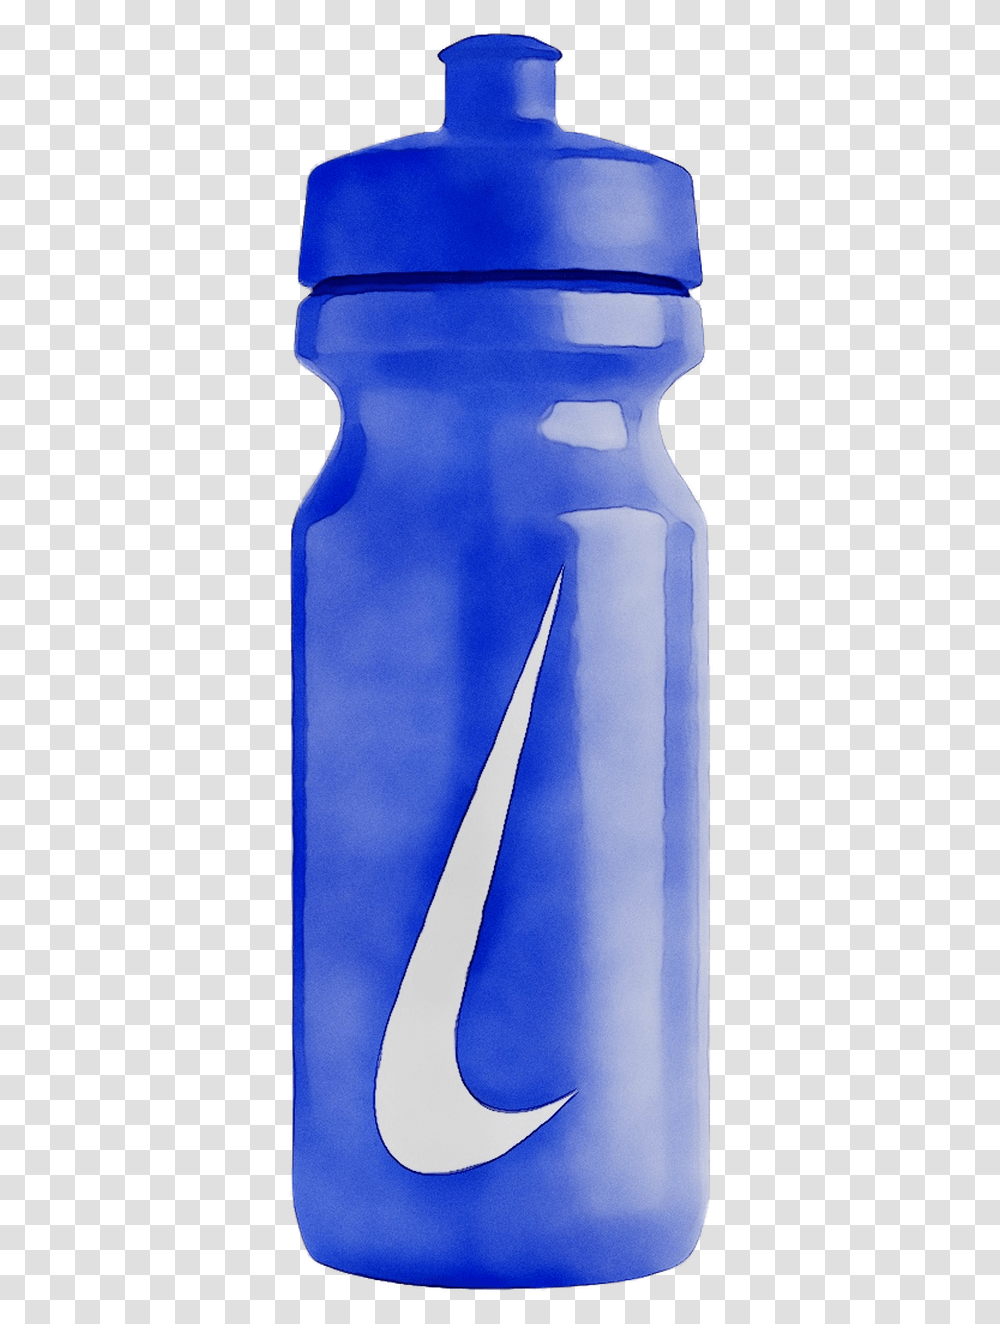 Water Bottles Plastic Bottle Plastic Water Bottle Background, Beverage, Drink, Alcohol, Jug Transparent Png